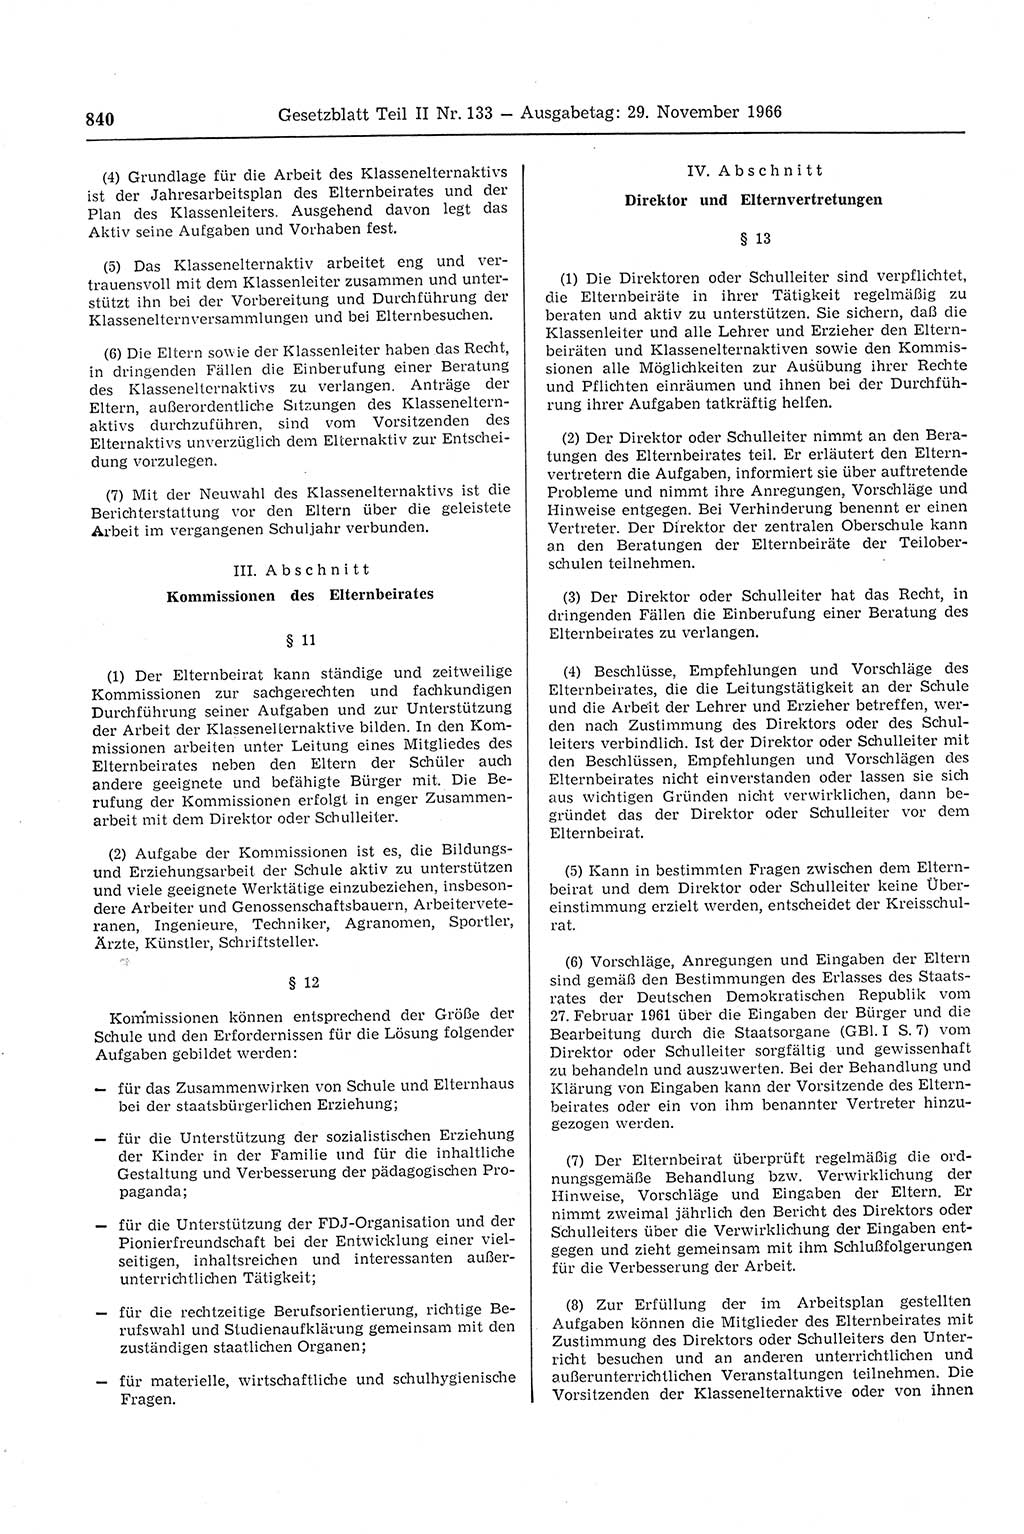 Gesetzblatt (GBl.) der Deutschen Demokratischen Republik (DDR) Teil ⅠⅠ 1966, Seite 840 (GBl. DDR ⅠⅠ 1966, S. 840)